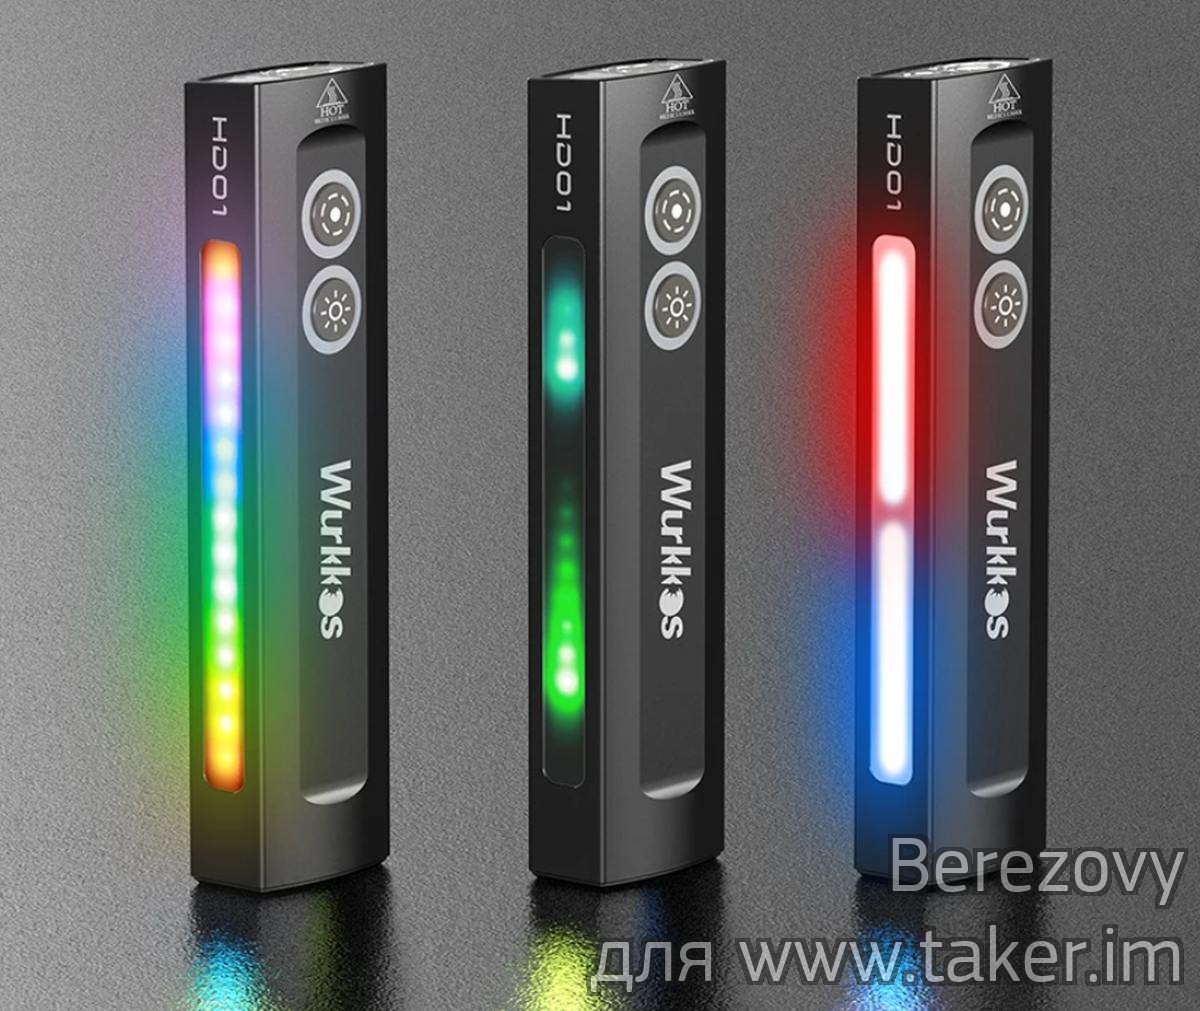 Обзор Wurkkos HD01 - максимально многофункциональный городской фонарь. Флуд/спот/RGB + мощный зеленый лазер